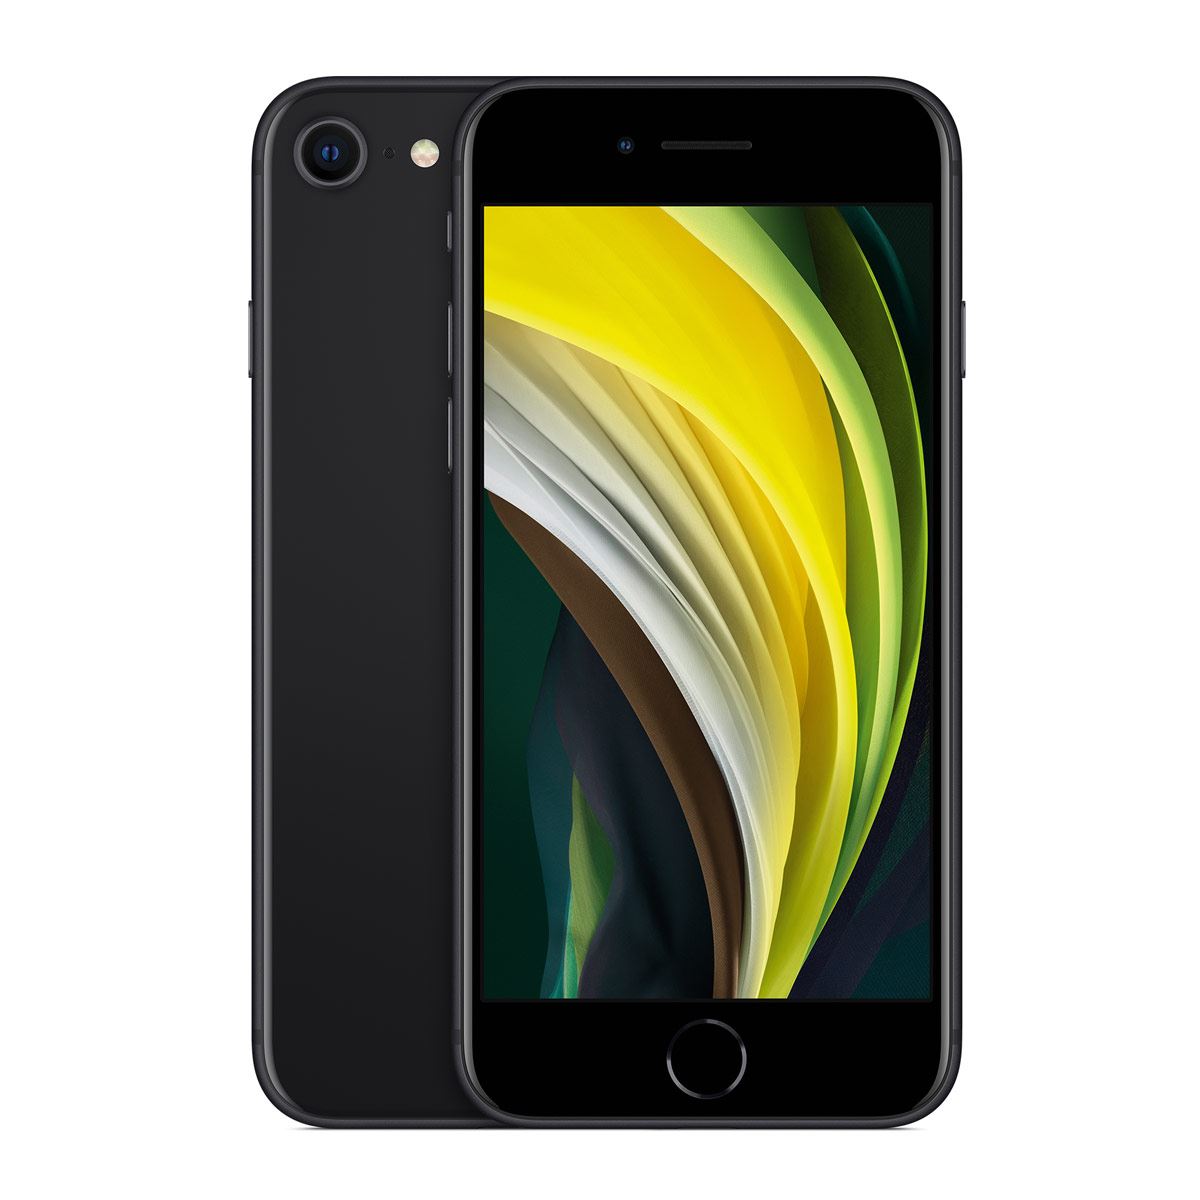 iPhone SE 64GB 2020 Negro Telcel R9